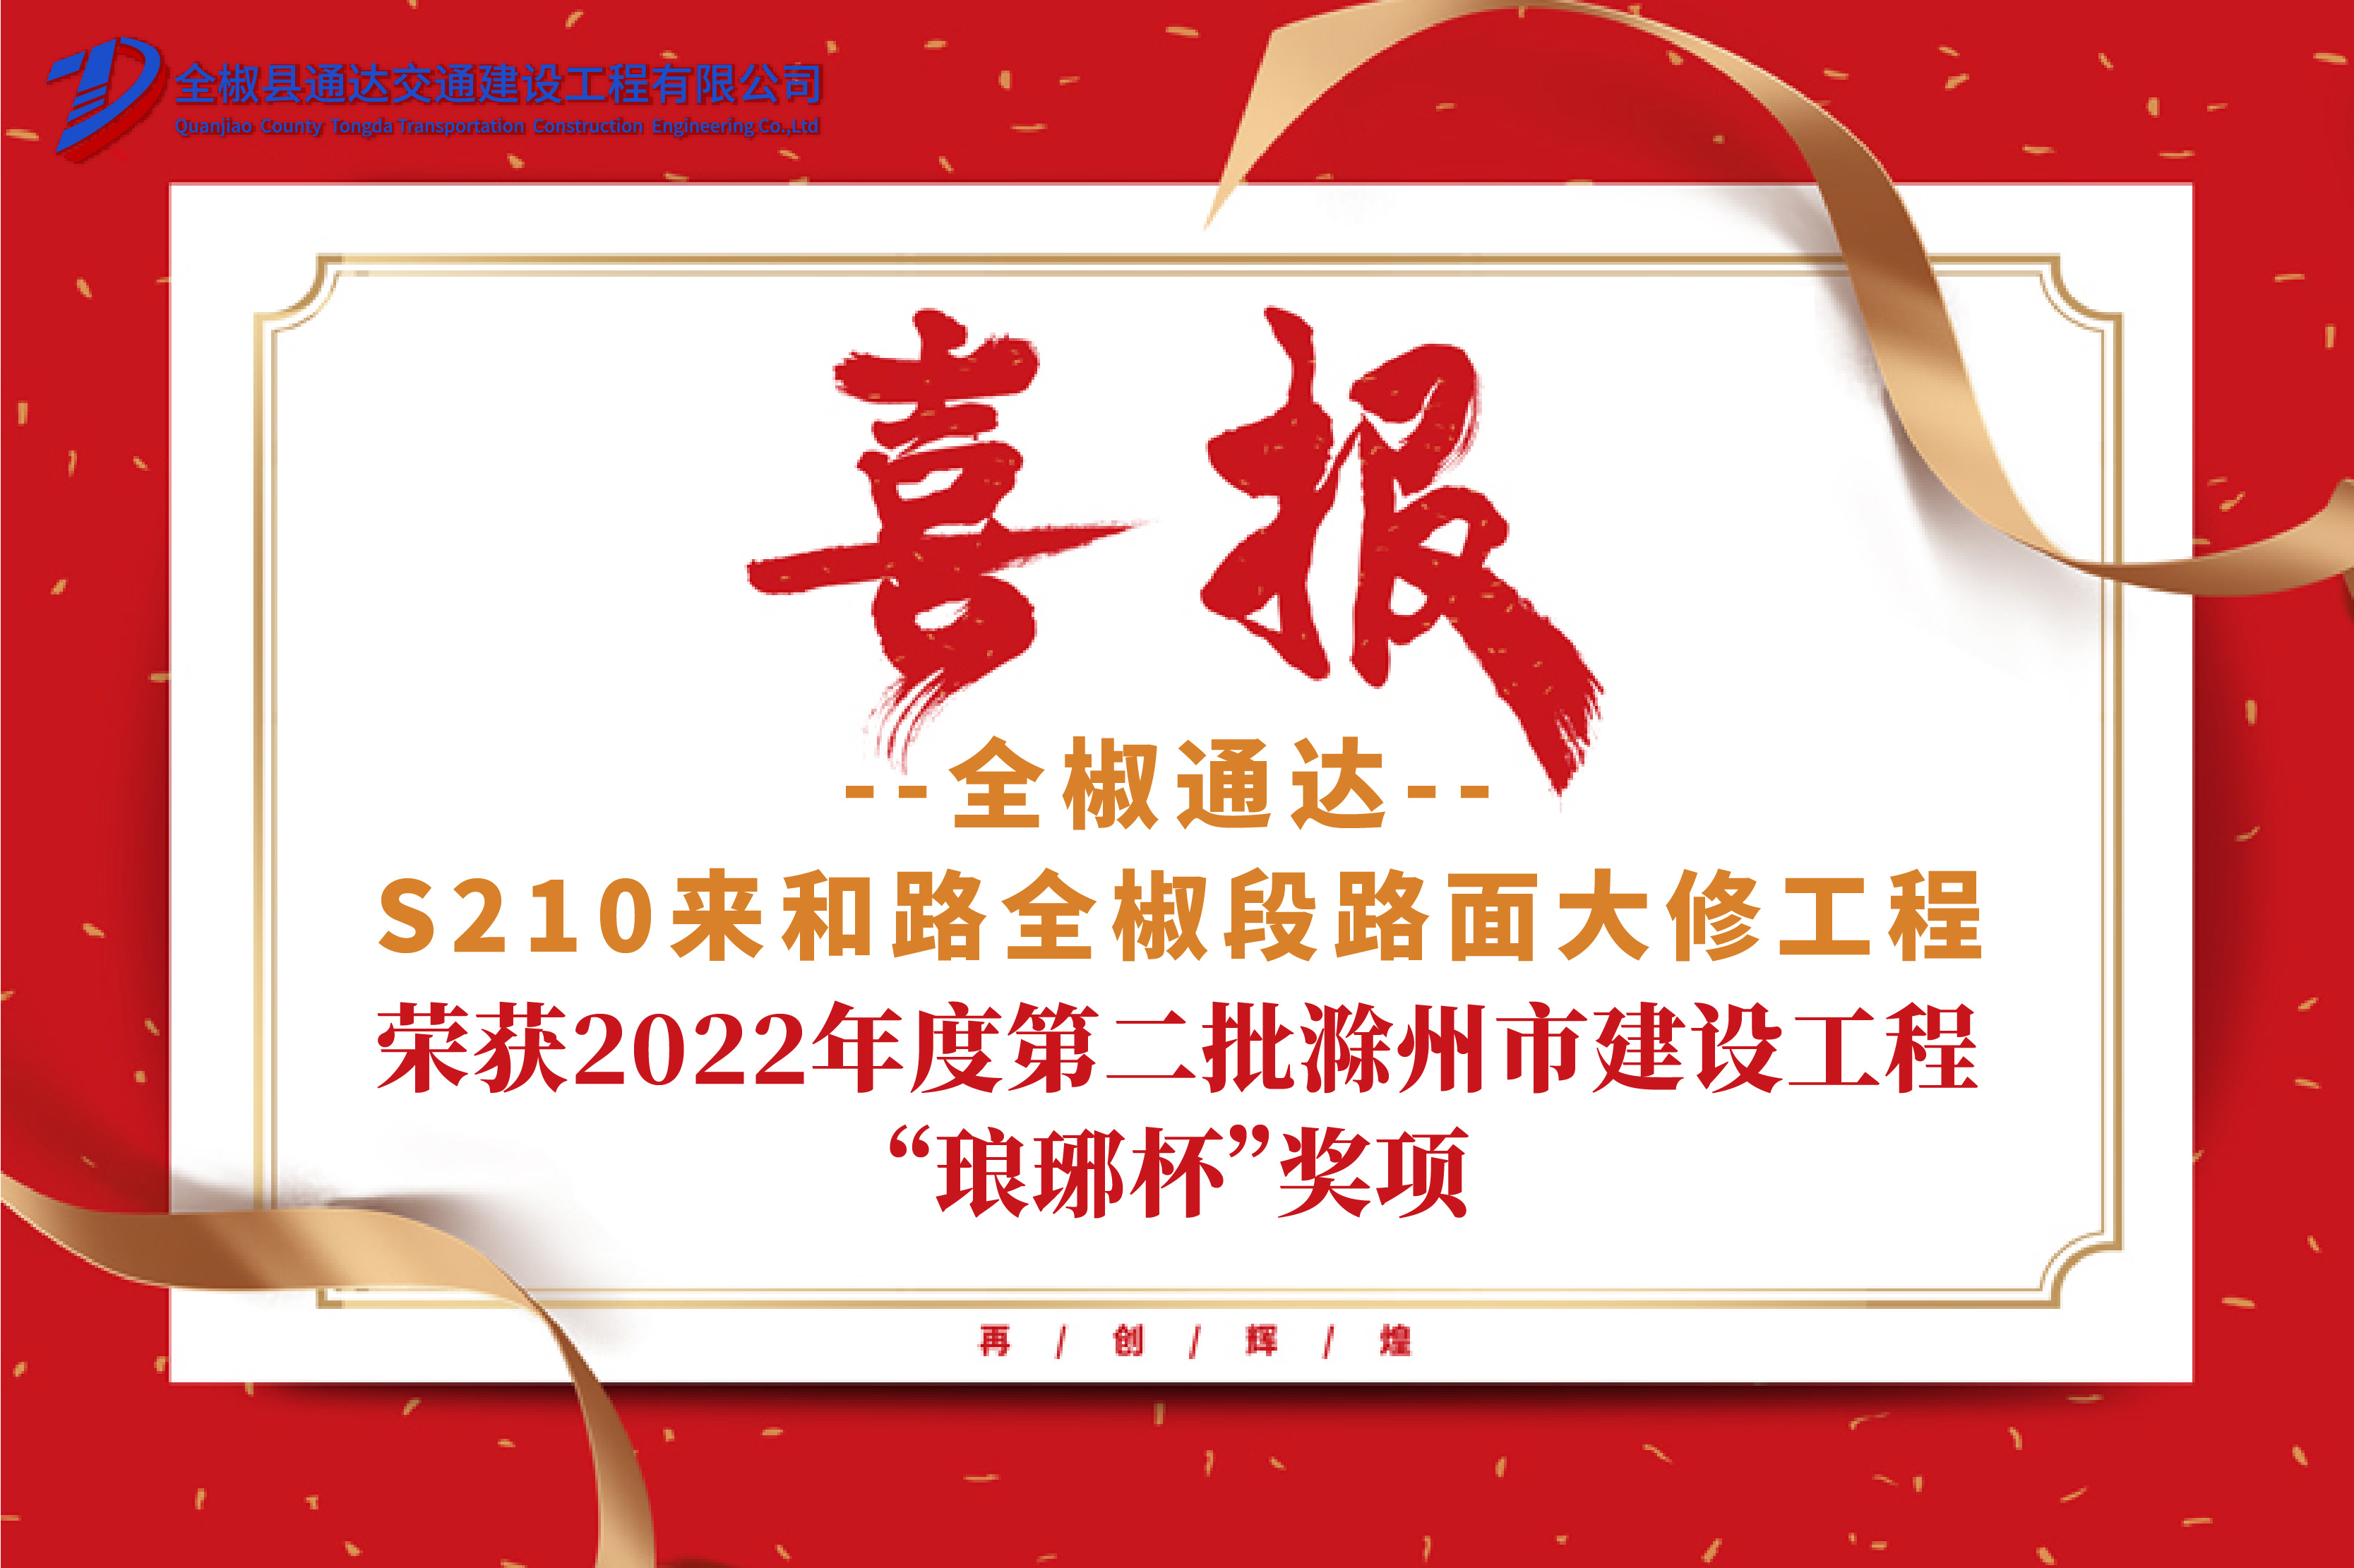 公司S210来和路全椒段路面大修工程 荣获2022年度第二批滁州市建设工程“琅琊杯”奖项